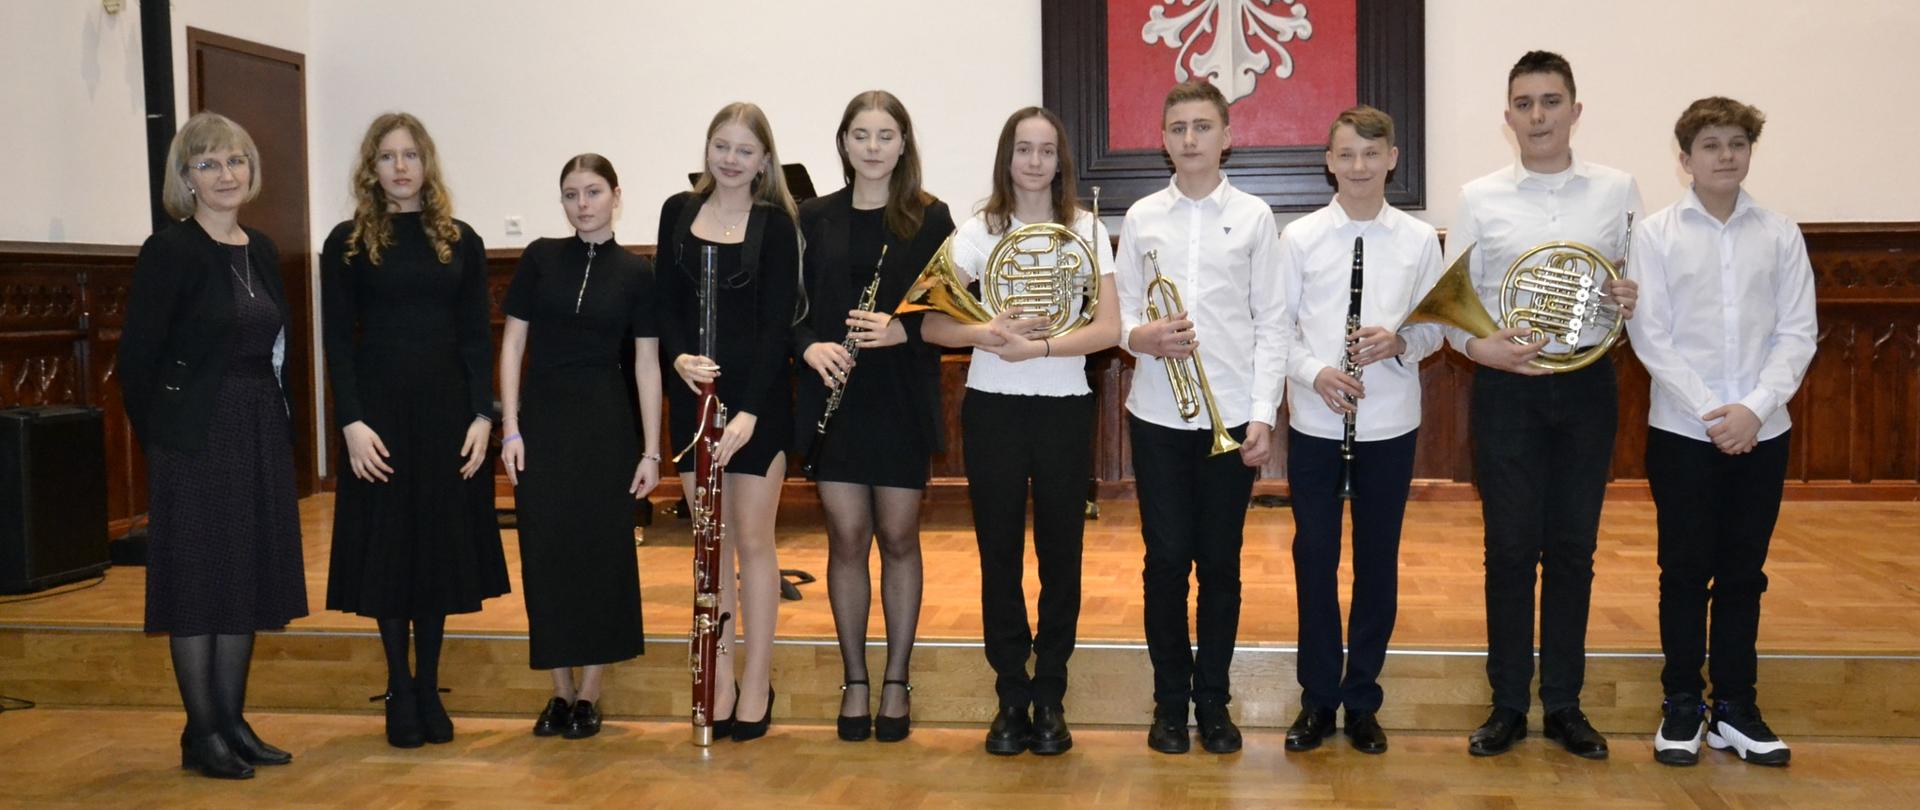 uczniowie klasy IV A i B cyklu czteroletniego PSM I stopnia podczas swojego koncertu klasowego na sali królewskiej wraz z naucz. Renata Wrażeń.